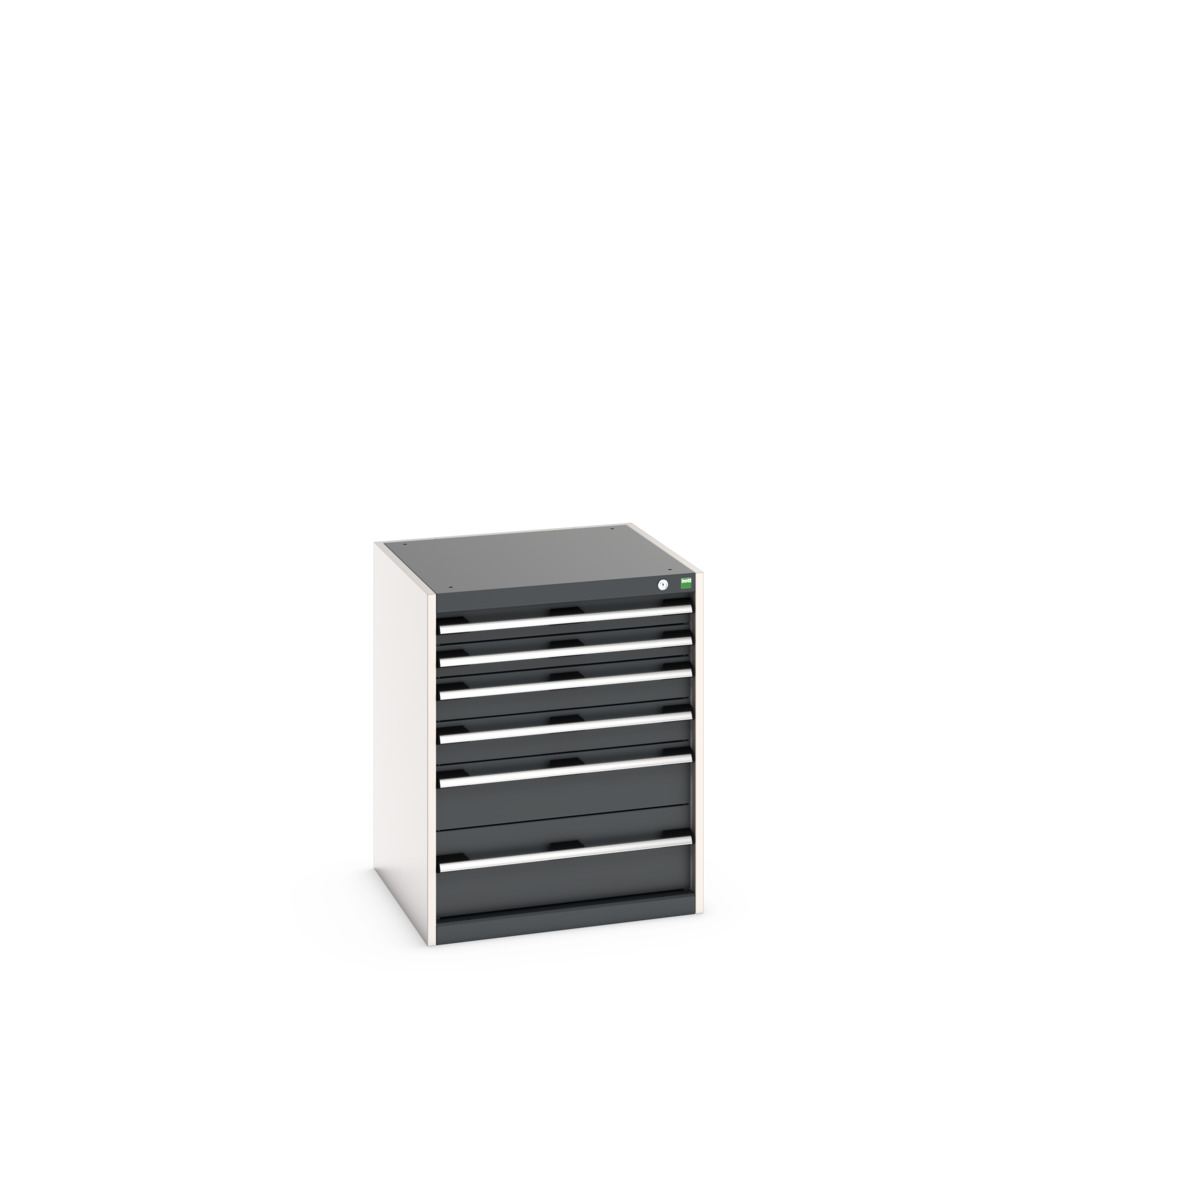 40019039.19V - cubio drawer cabinet